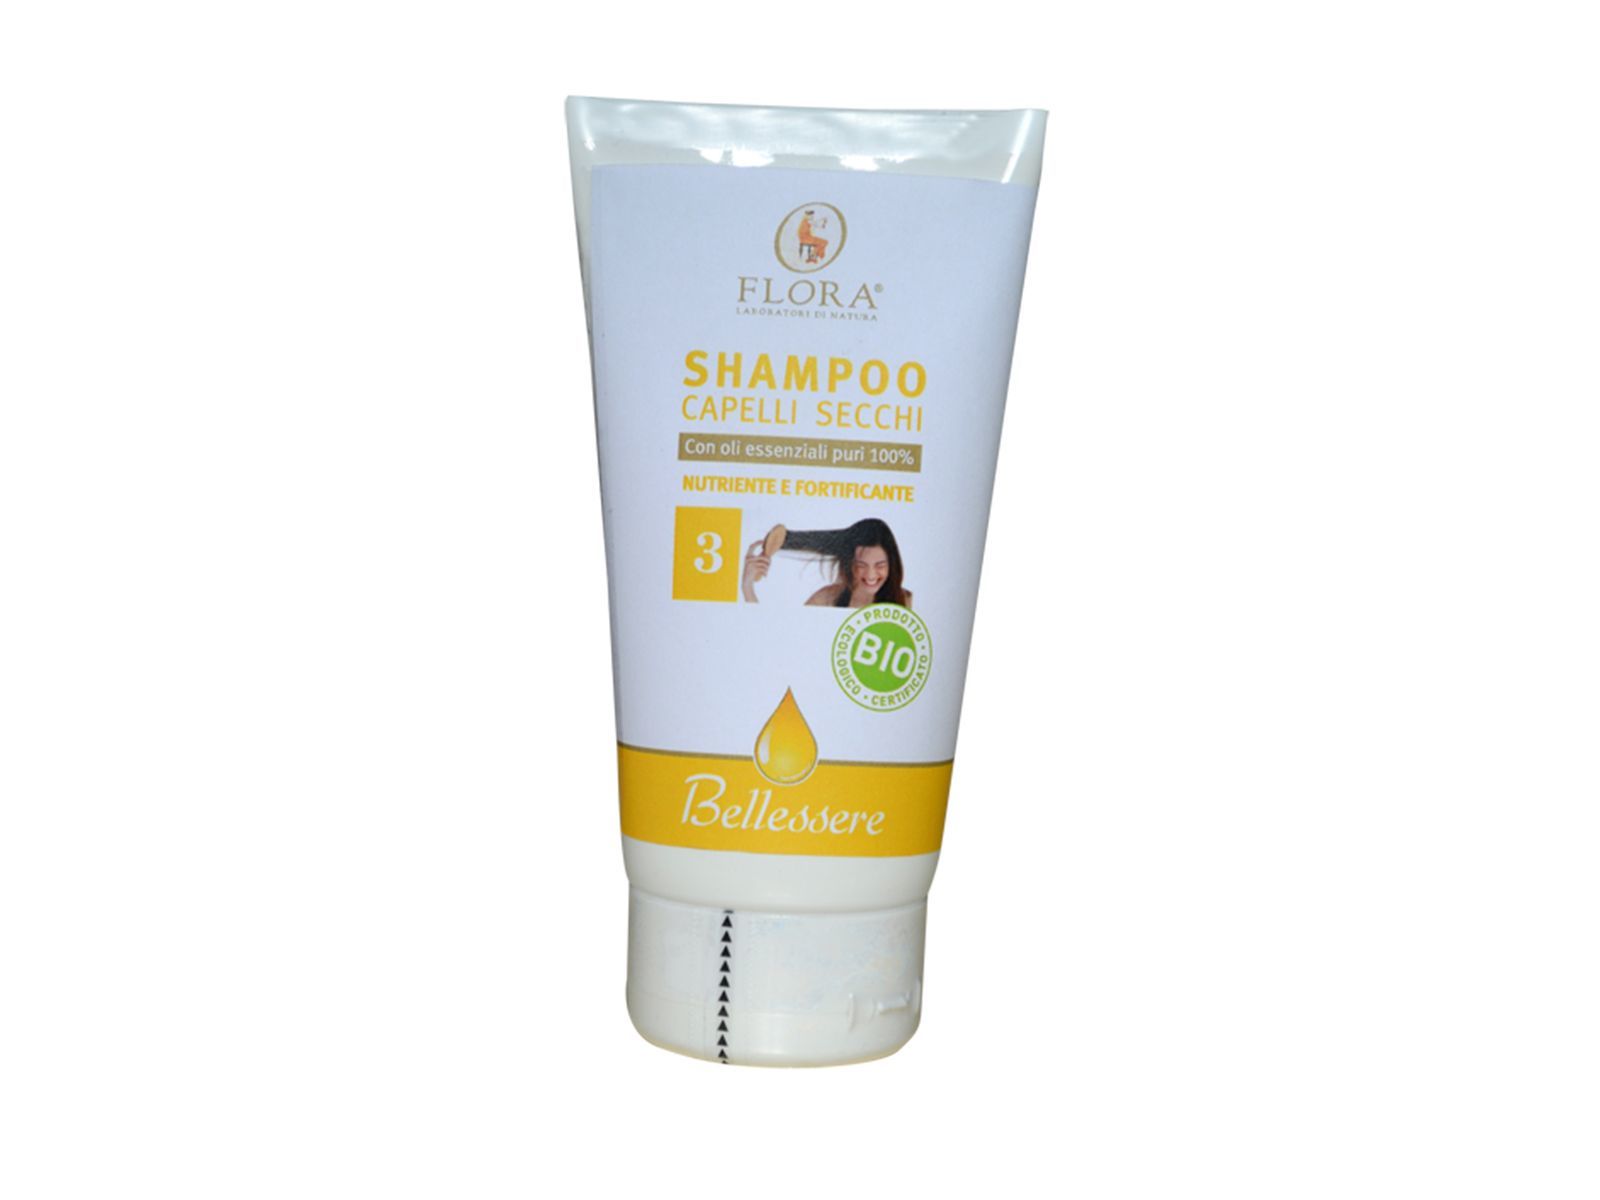 Shampoo capelli Secchi - Contenuto 150 ml